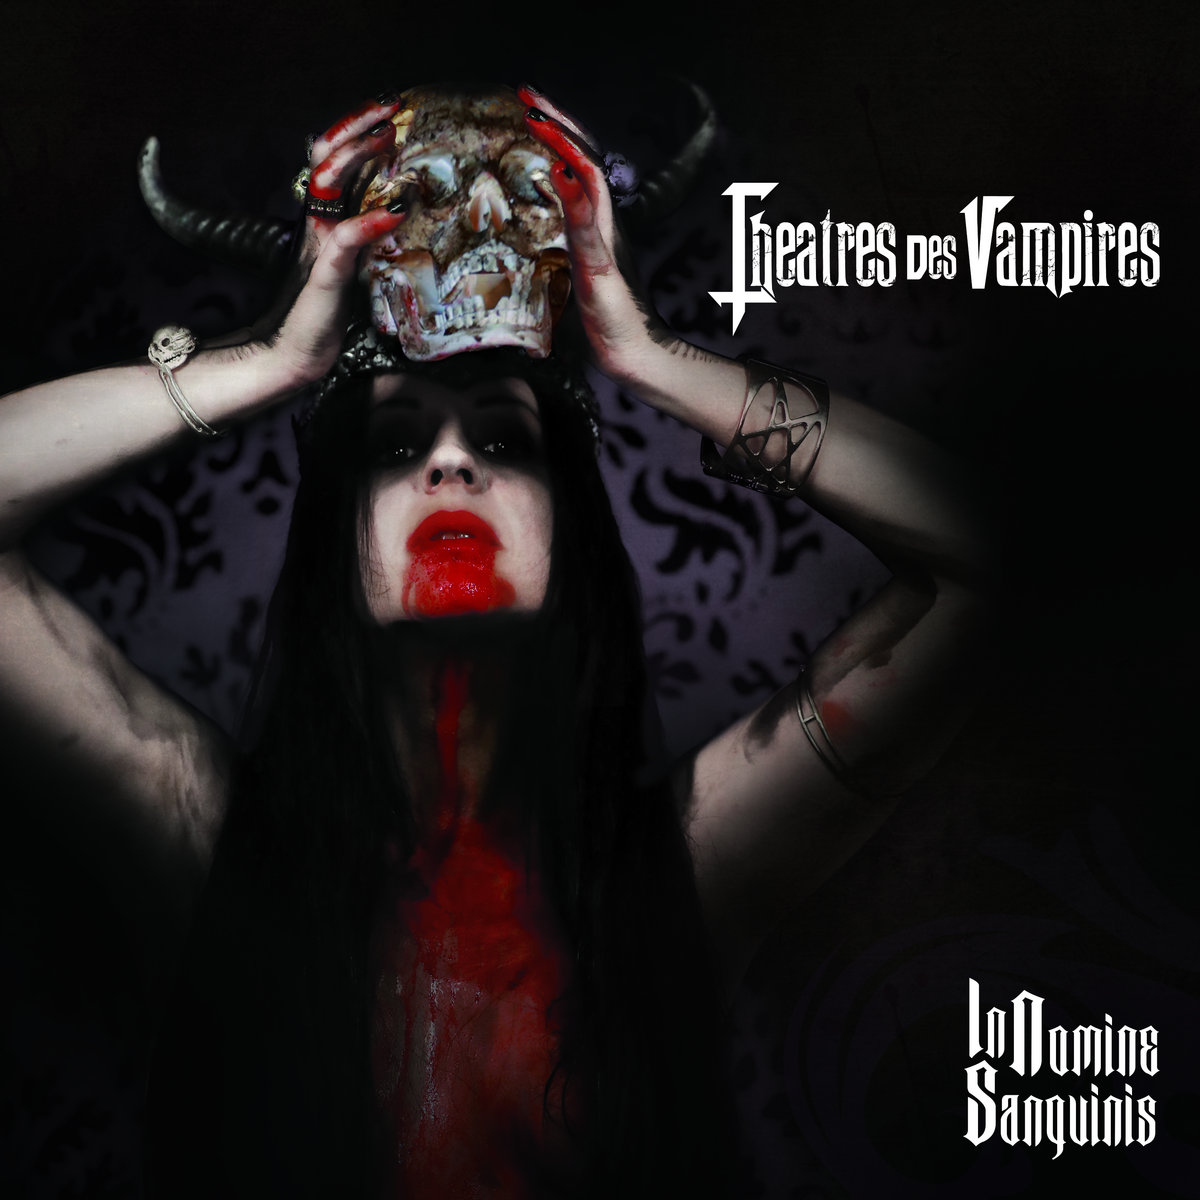 Theatres Des Vampires - In Nomine Sanguinis (2021)